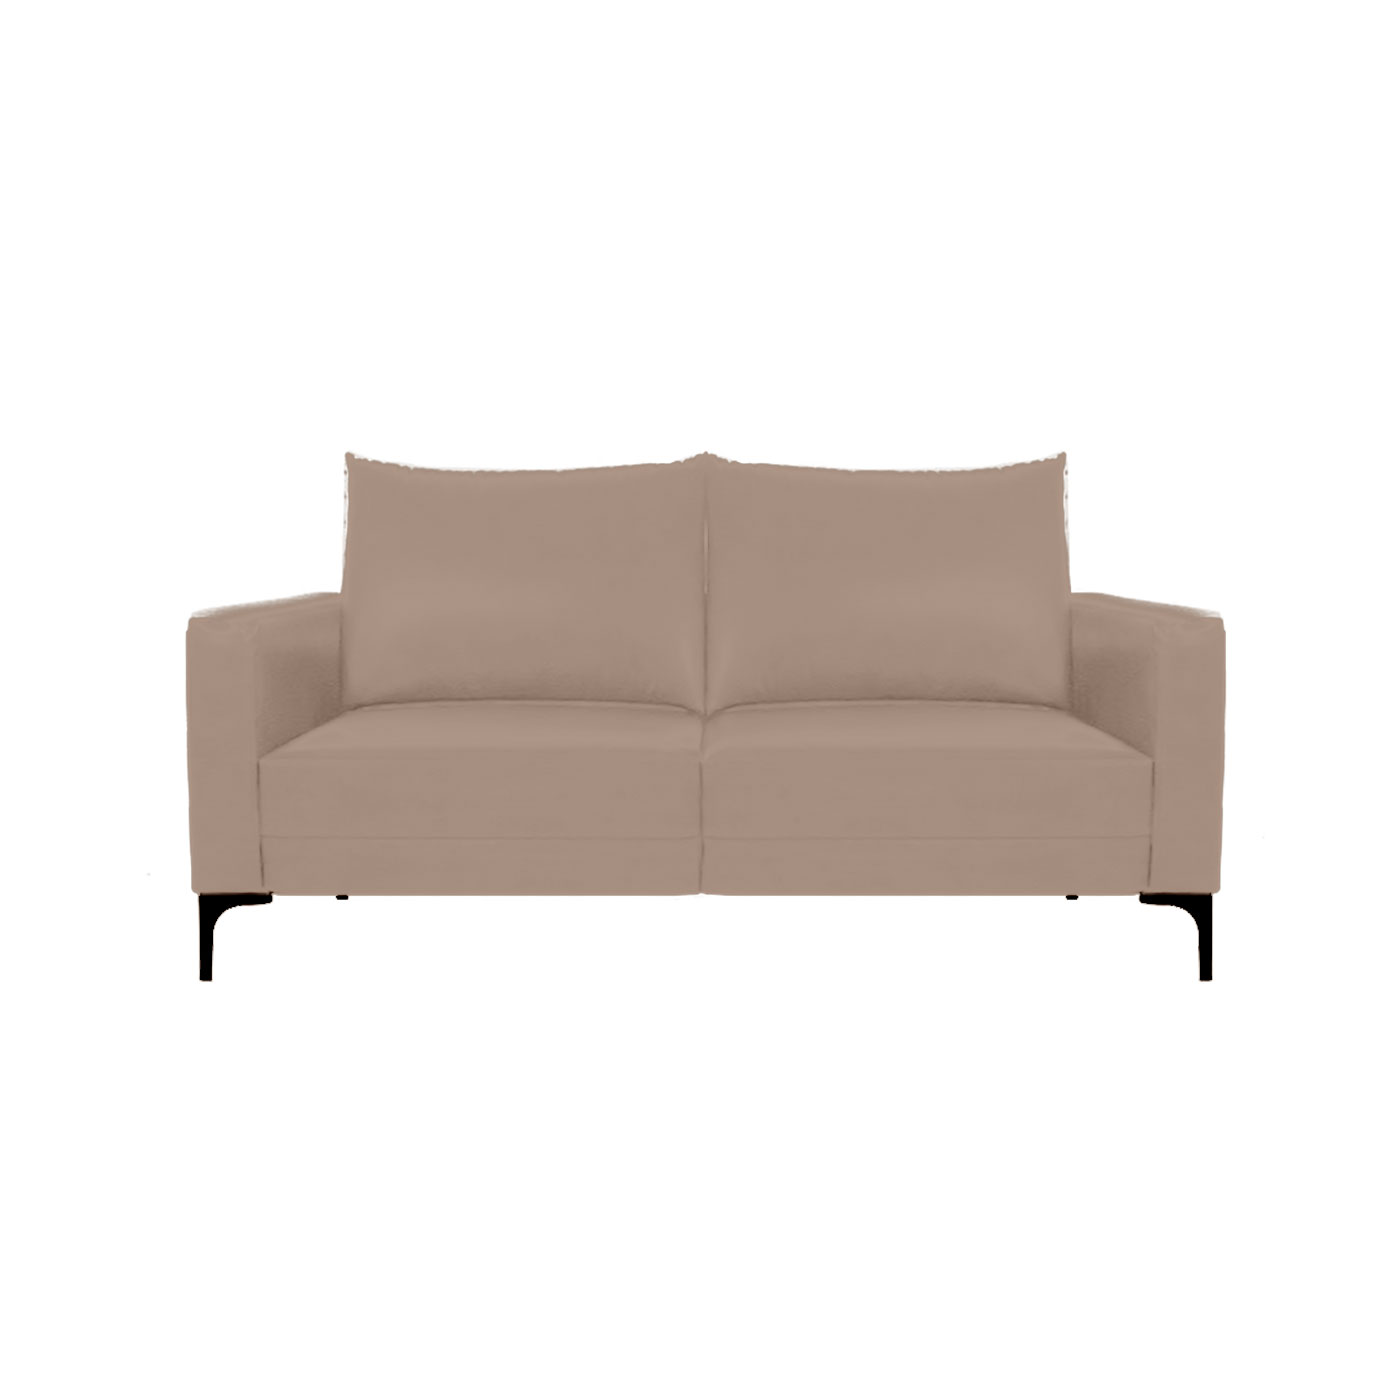 Smithfield Lenox Tan Double Sofa